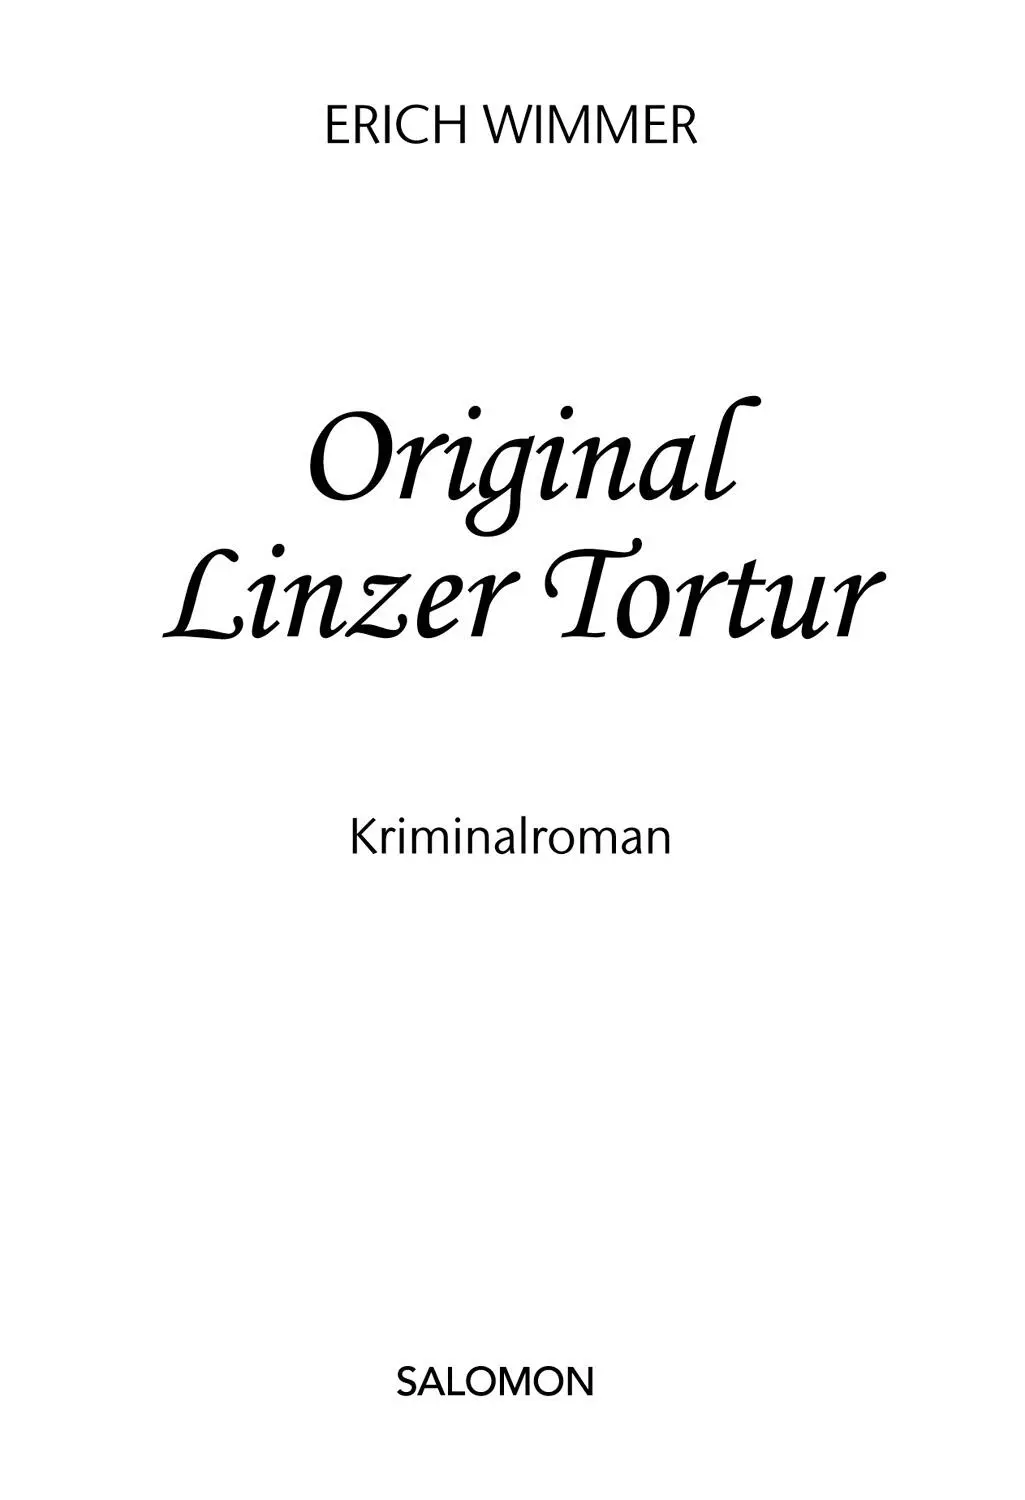 Erich Wimmer Original Linzer Tortur Alle Rechte vorbehalten 2017 Salomon - фото 1